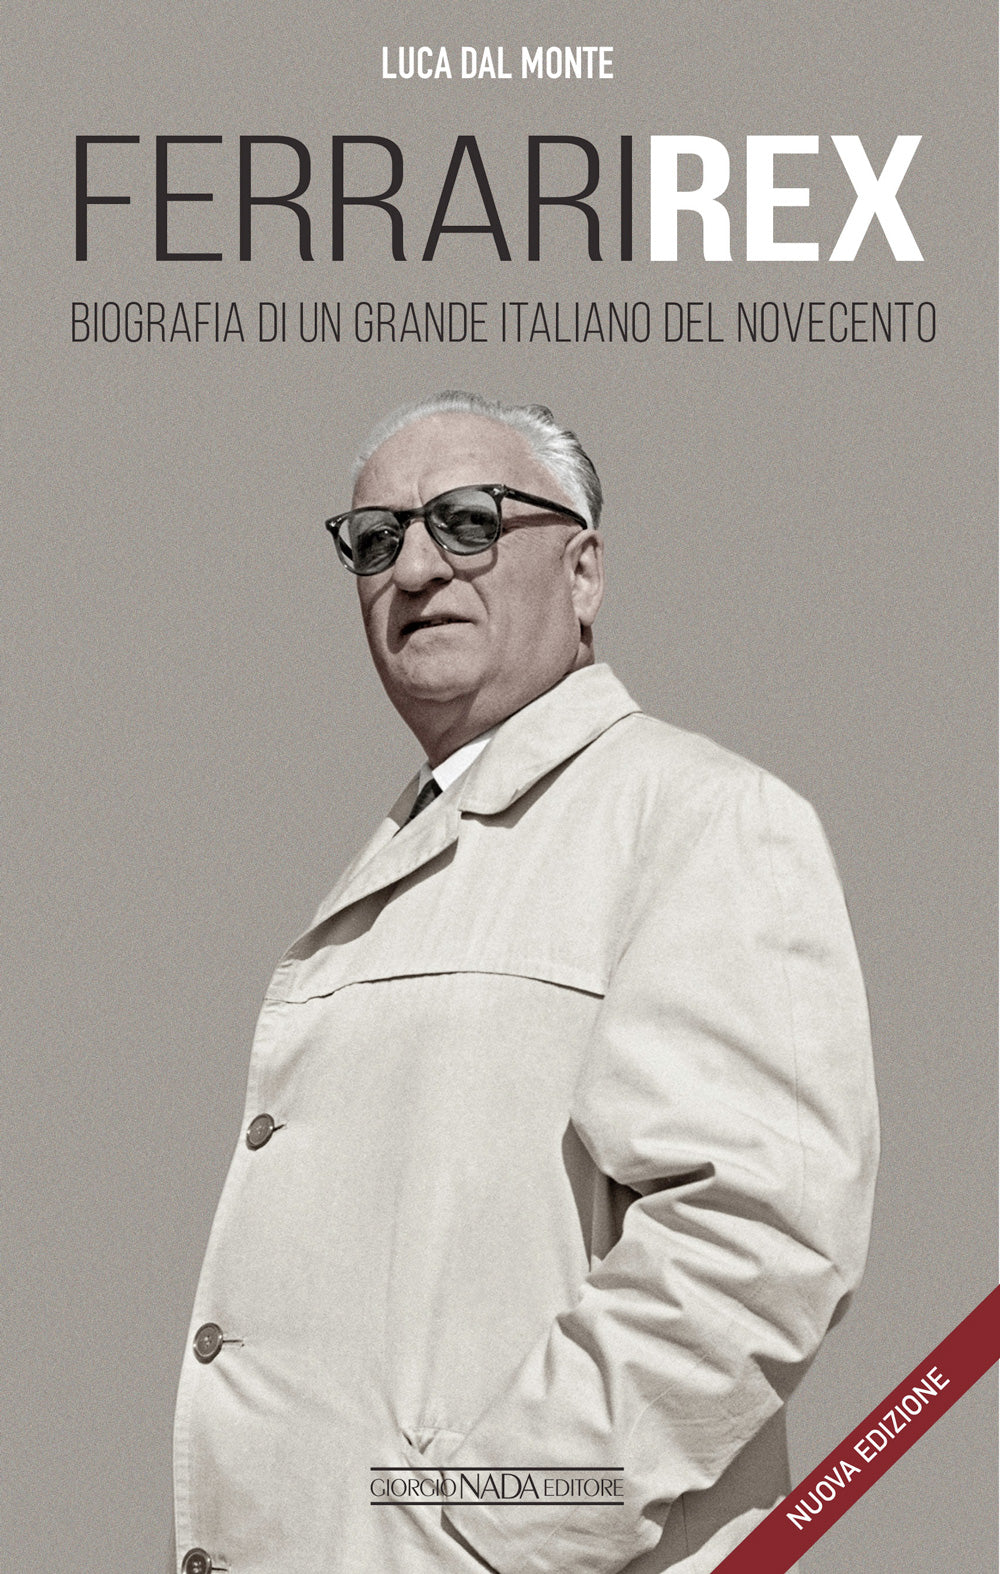 FERRARI REX::Biografia di un grande italiano del Novecento